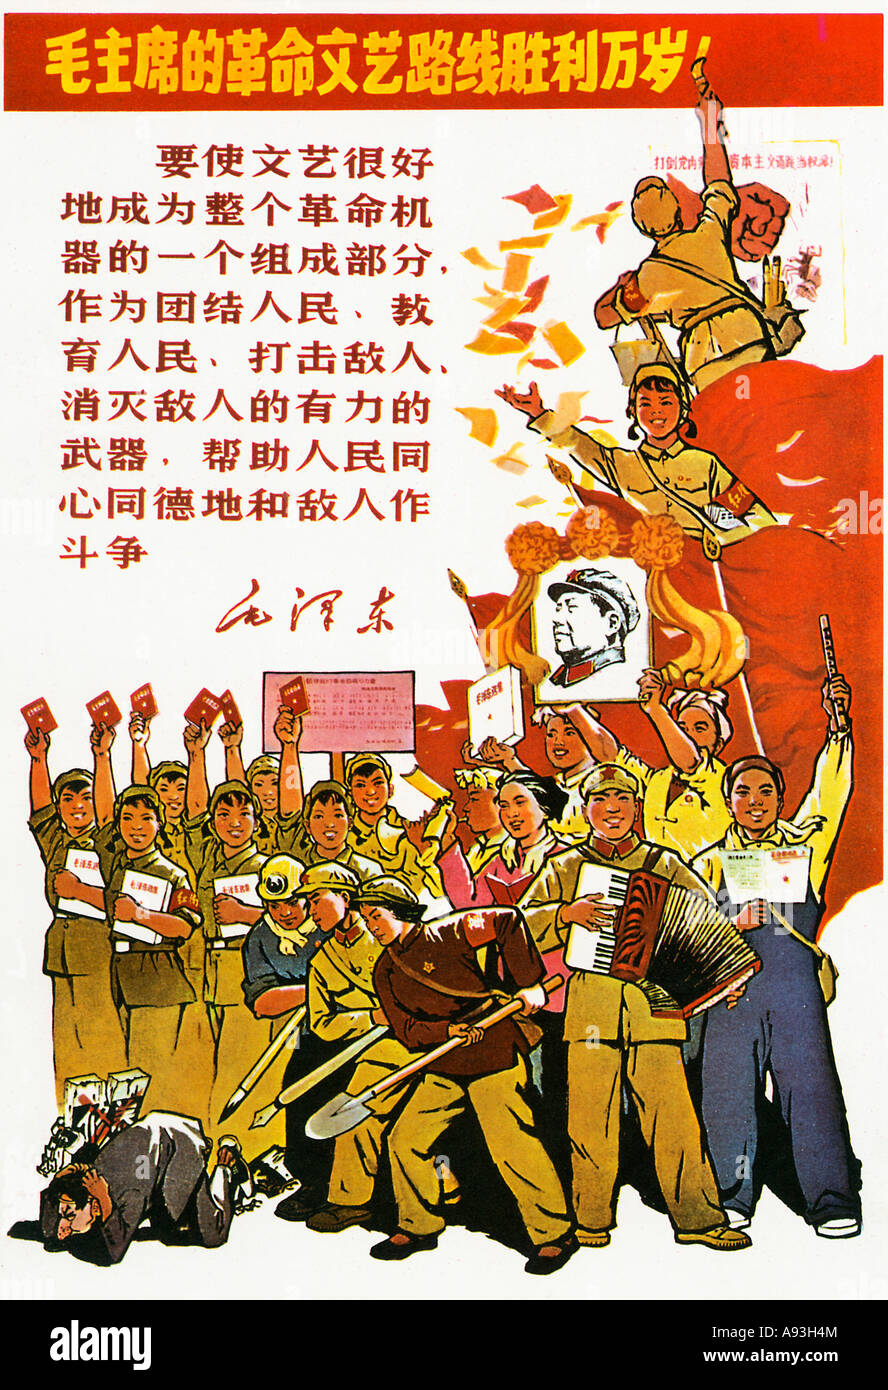 La grêle La défaite du révisionnisme dans notre Chine 1967 poster à partir de la période de la révolution culturelle chinoise Banque D'Images